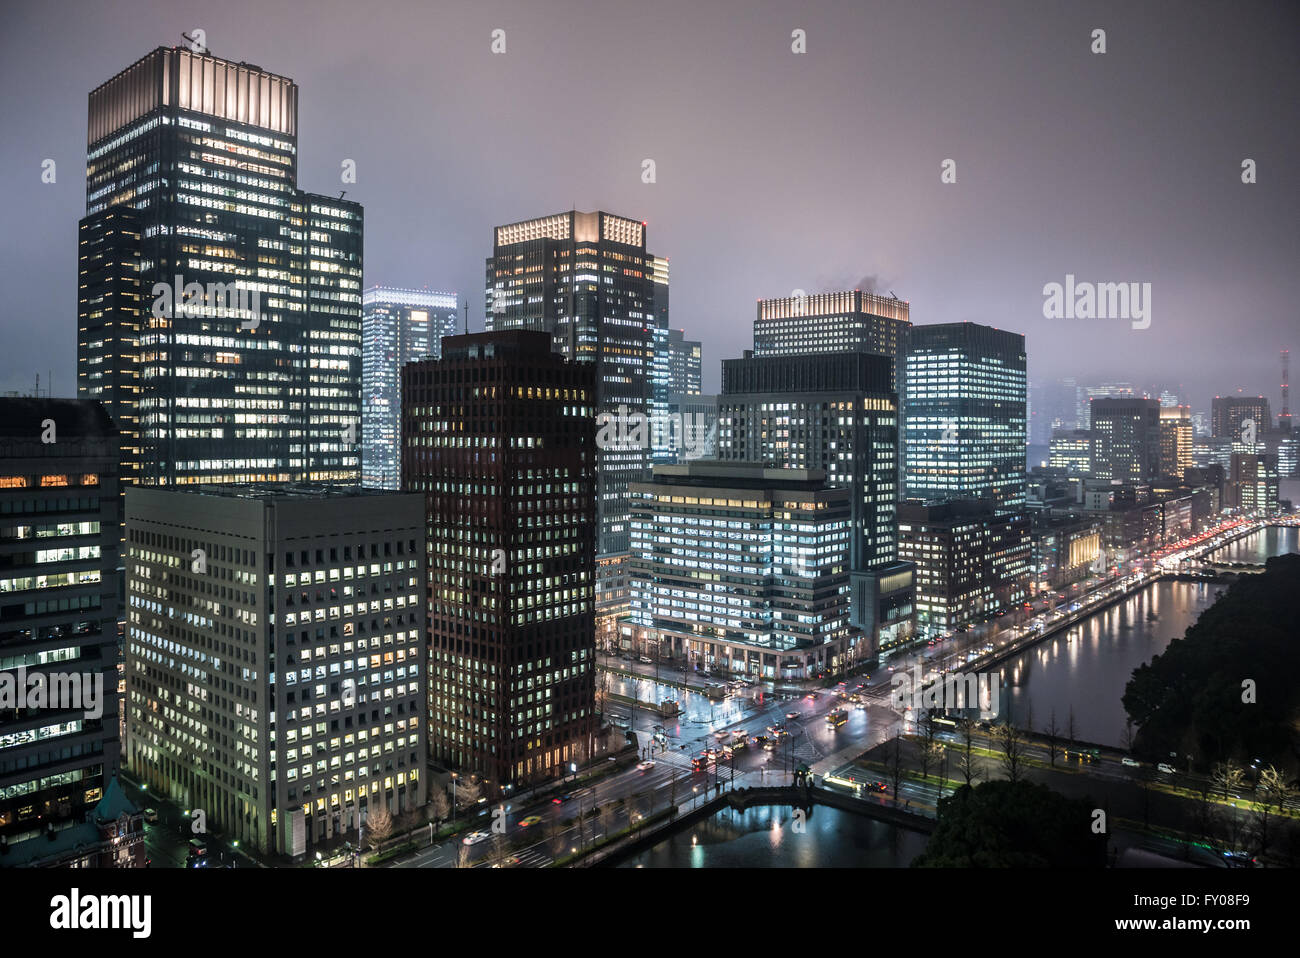 Vue du Palace Hotel à Tokyo, Japon avec Shin Marunouchi, Marine Nichido, Nippon Yusen, Mitsubishi Shoji et autres bâtiments Banque D'Images